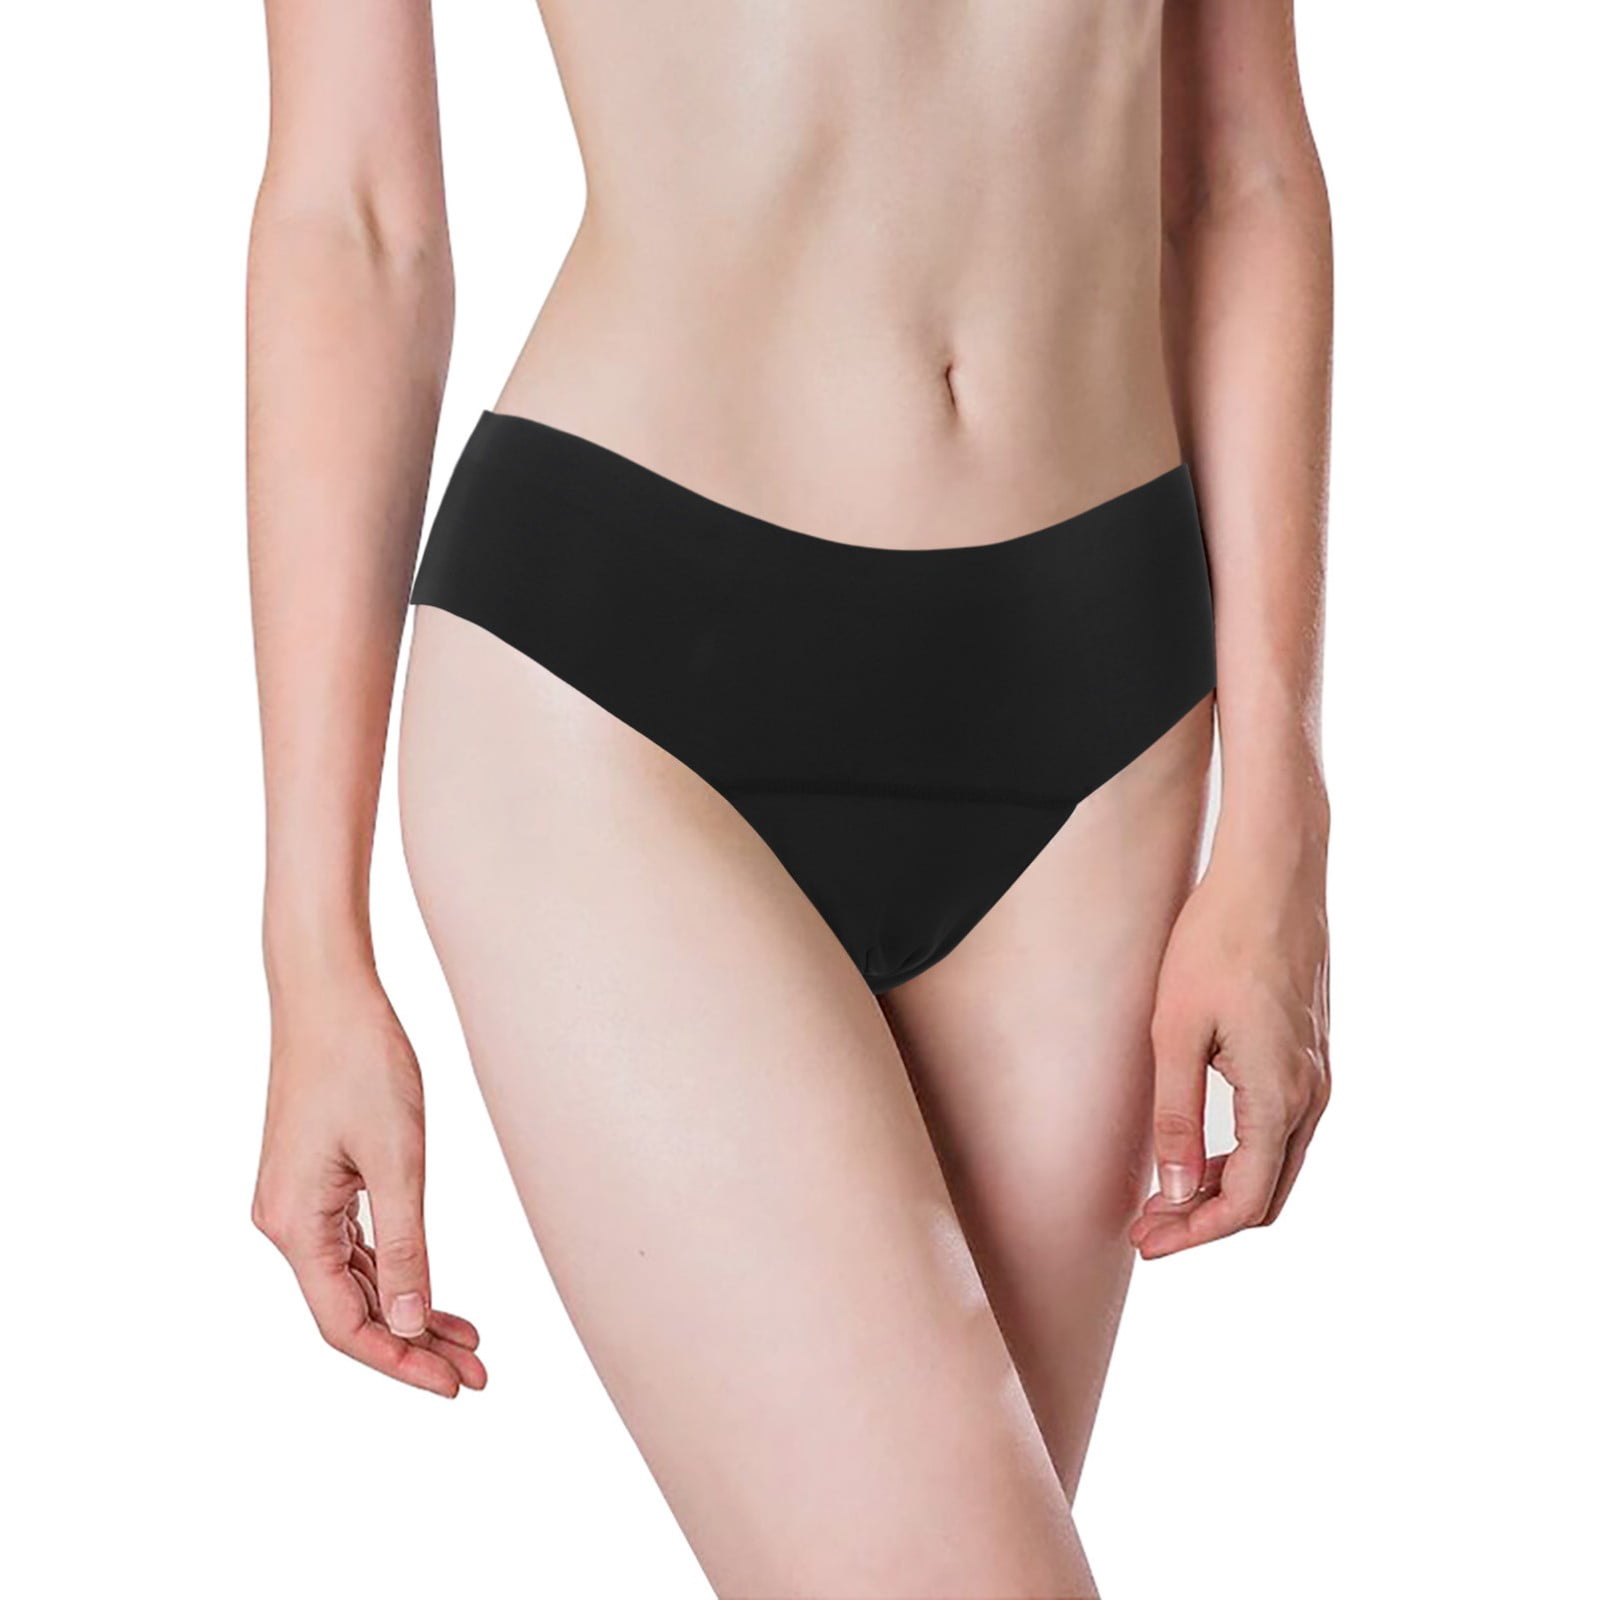 Buy the Teen Leakproof Underwear Bikini - Leakproof Bikinis for